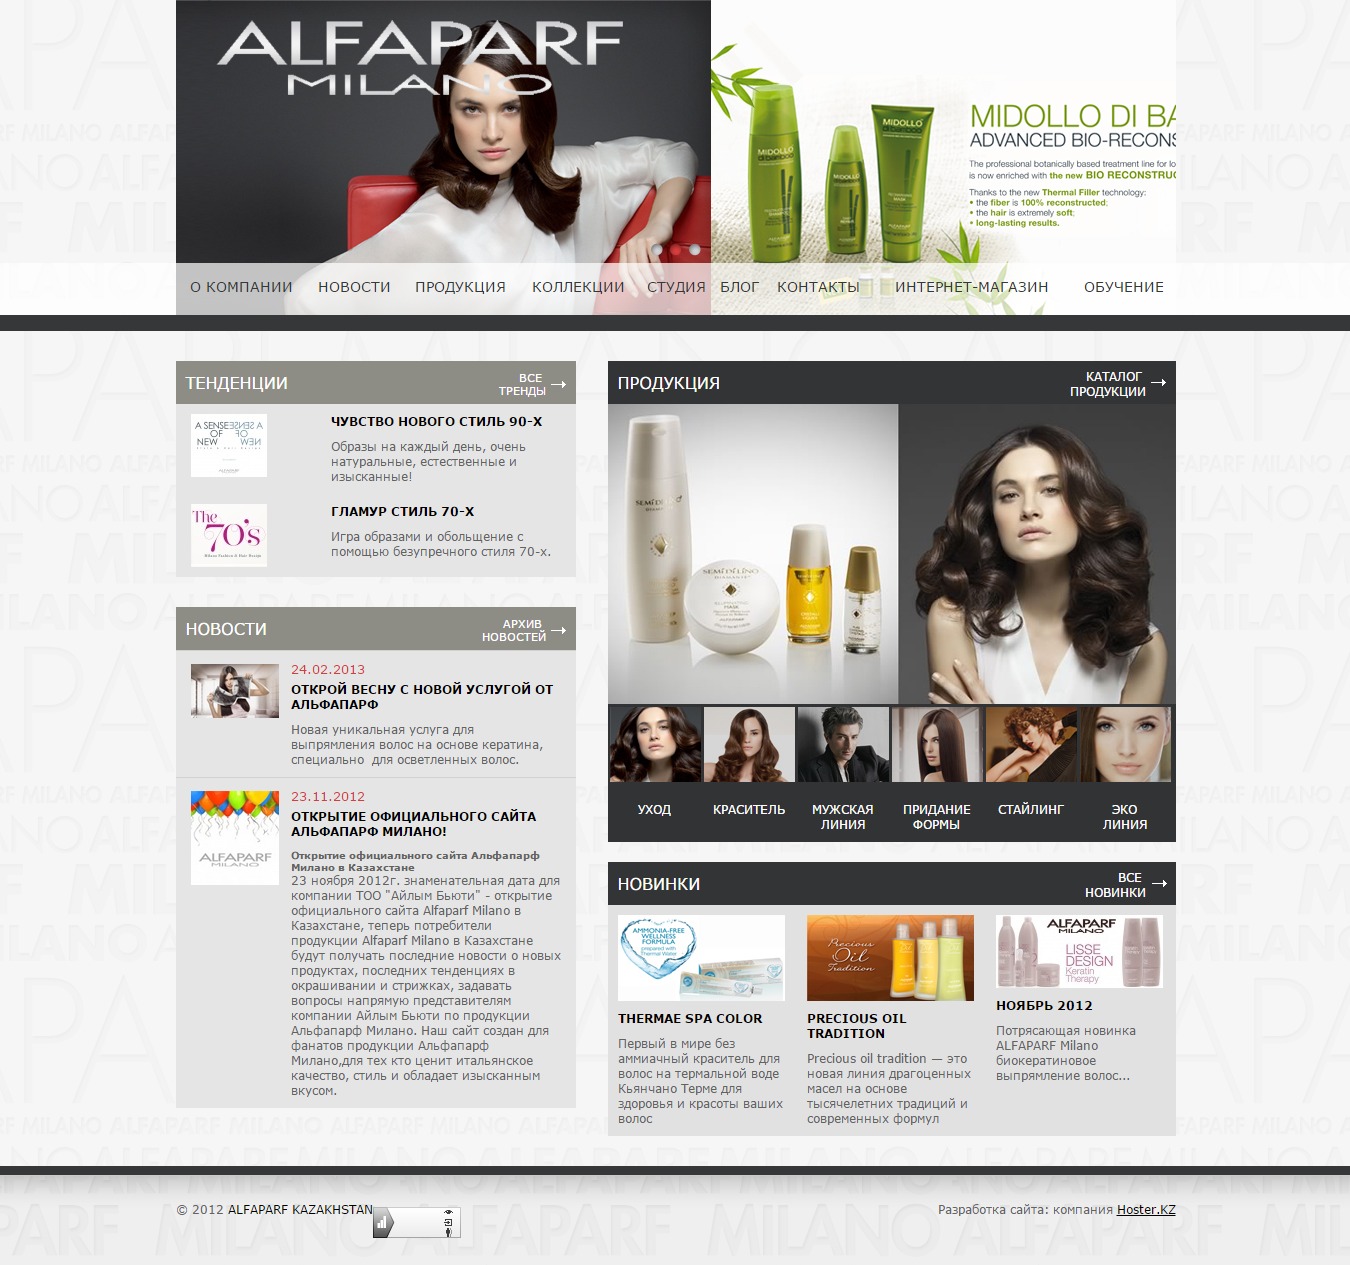 сайт-каталог итальянской косметики alfaparf milano